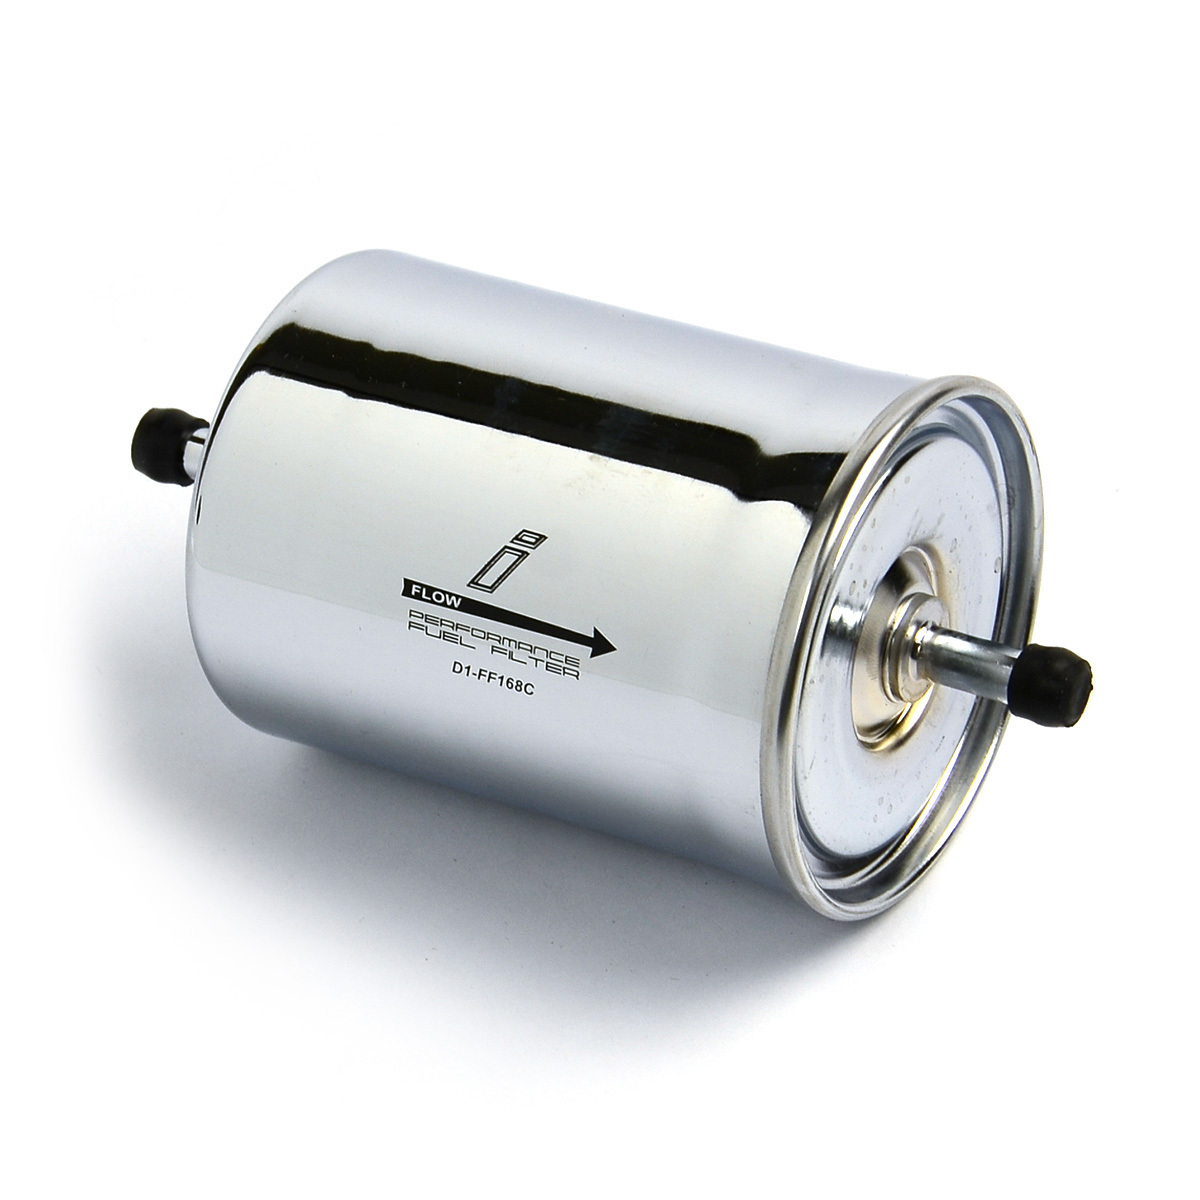 Drift Performance Magnetic Fuel Filter - Chrome Z168